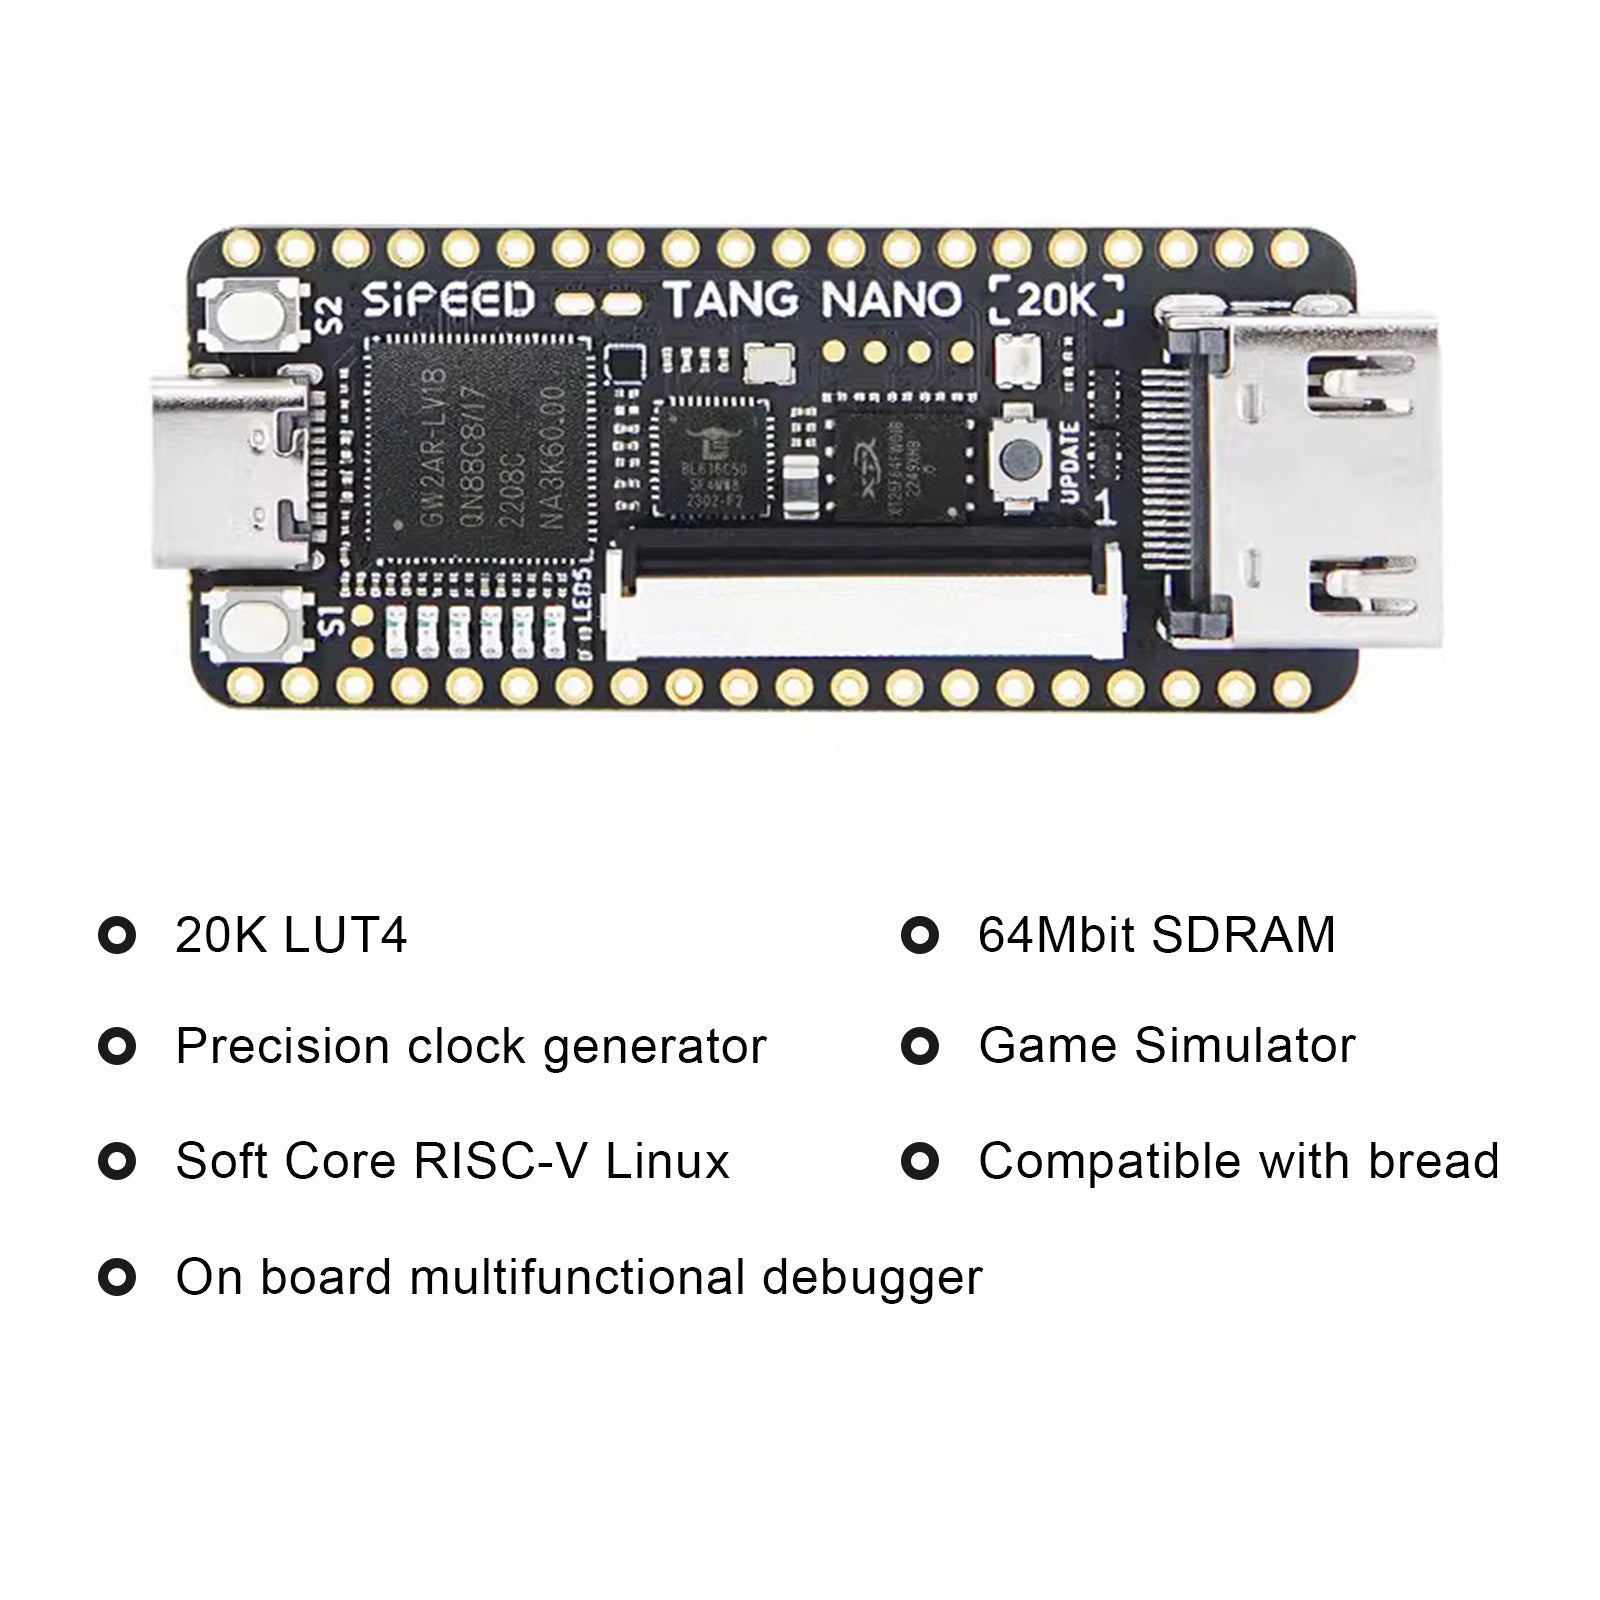 Sipeed Tang Nano 20K carte de développement Open Source FPGA jeu rétro avec haut-parleur